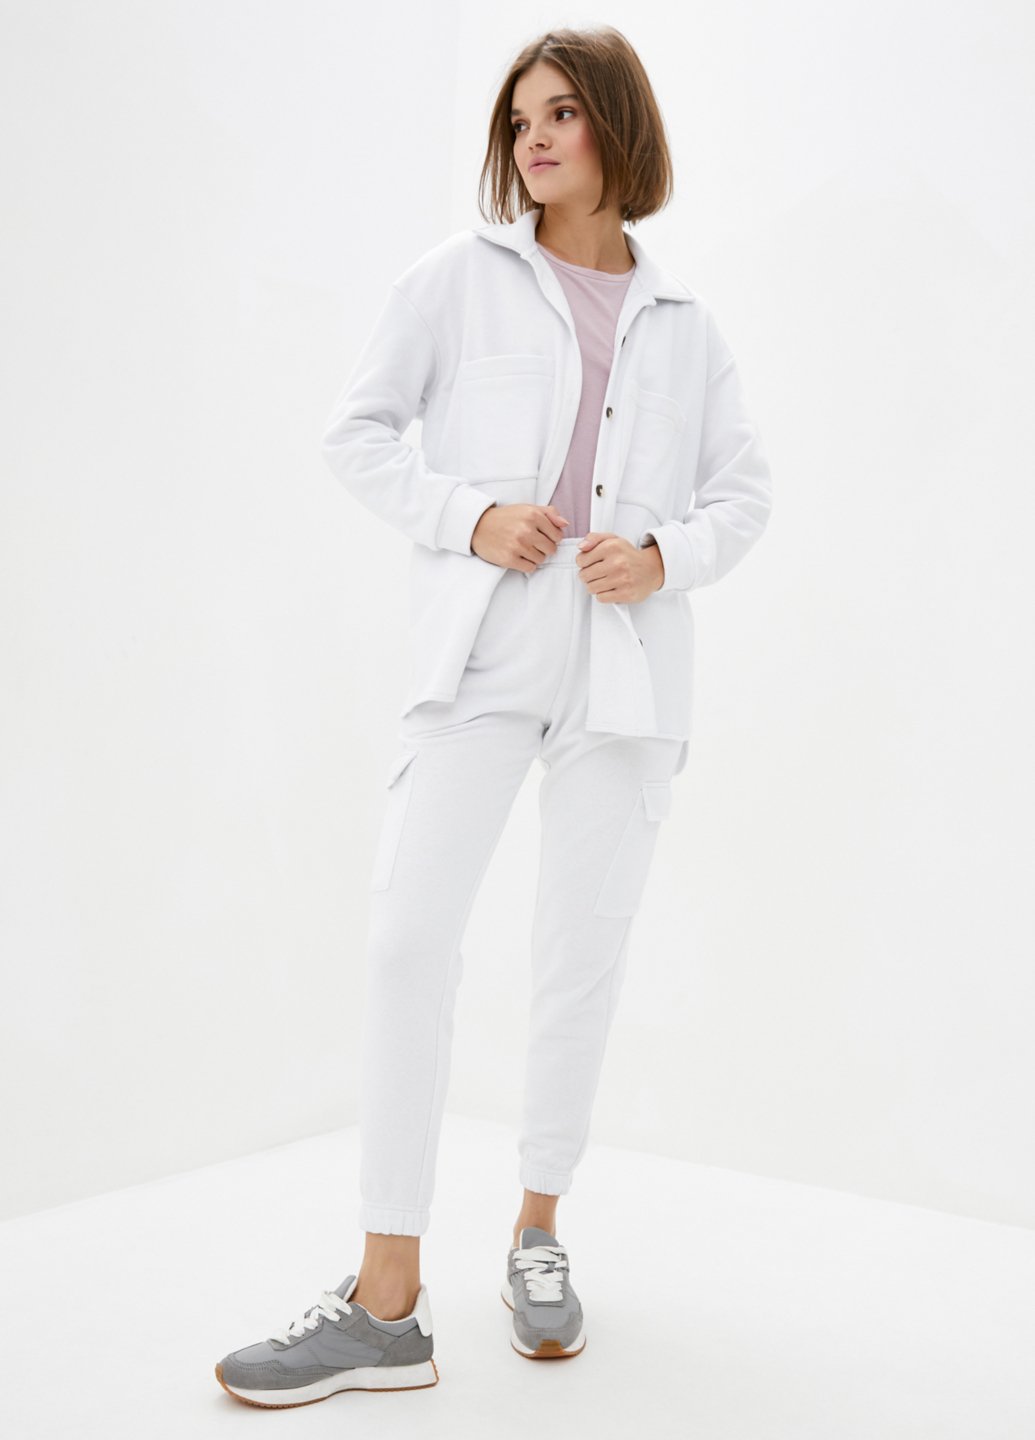 Купить Костюм женский с рубашкой белого цвета Merlini Хакни 100000072, размер 42-44 в интернет-магазине